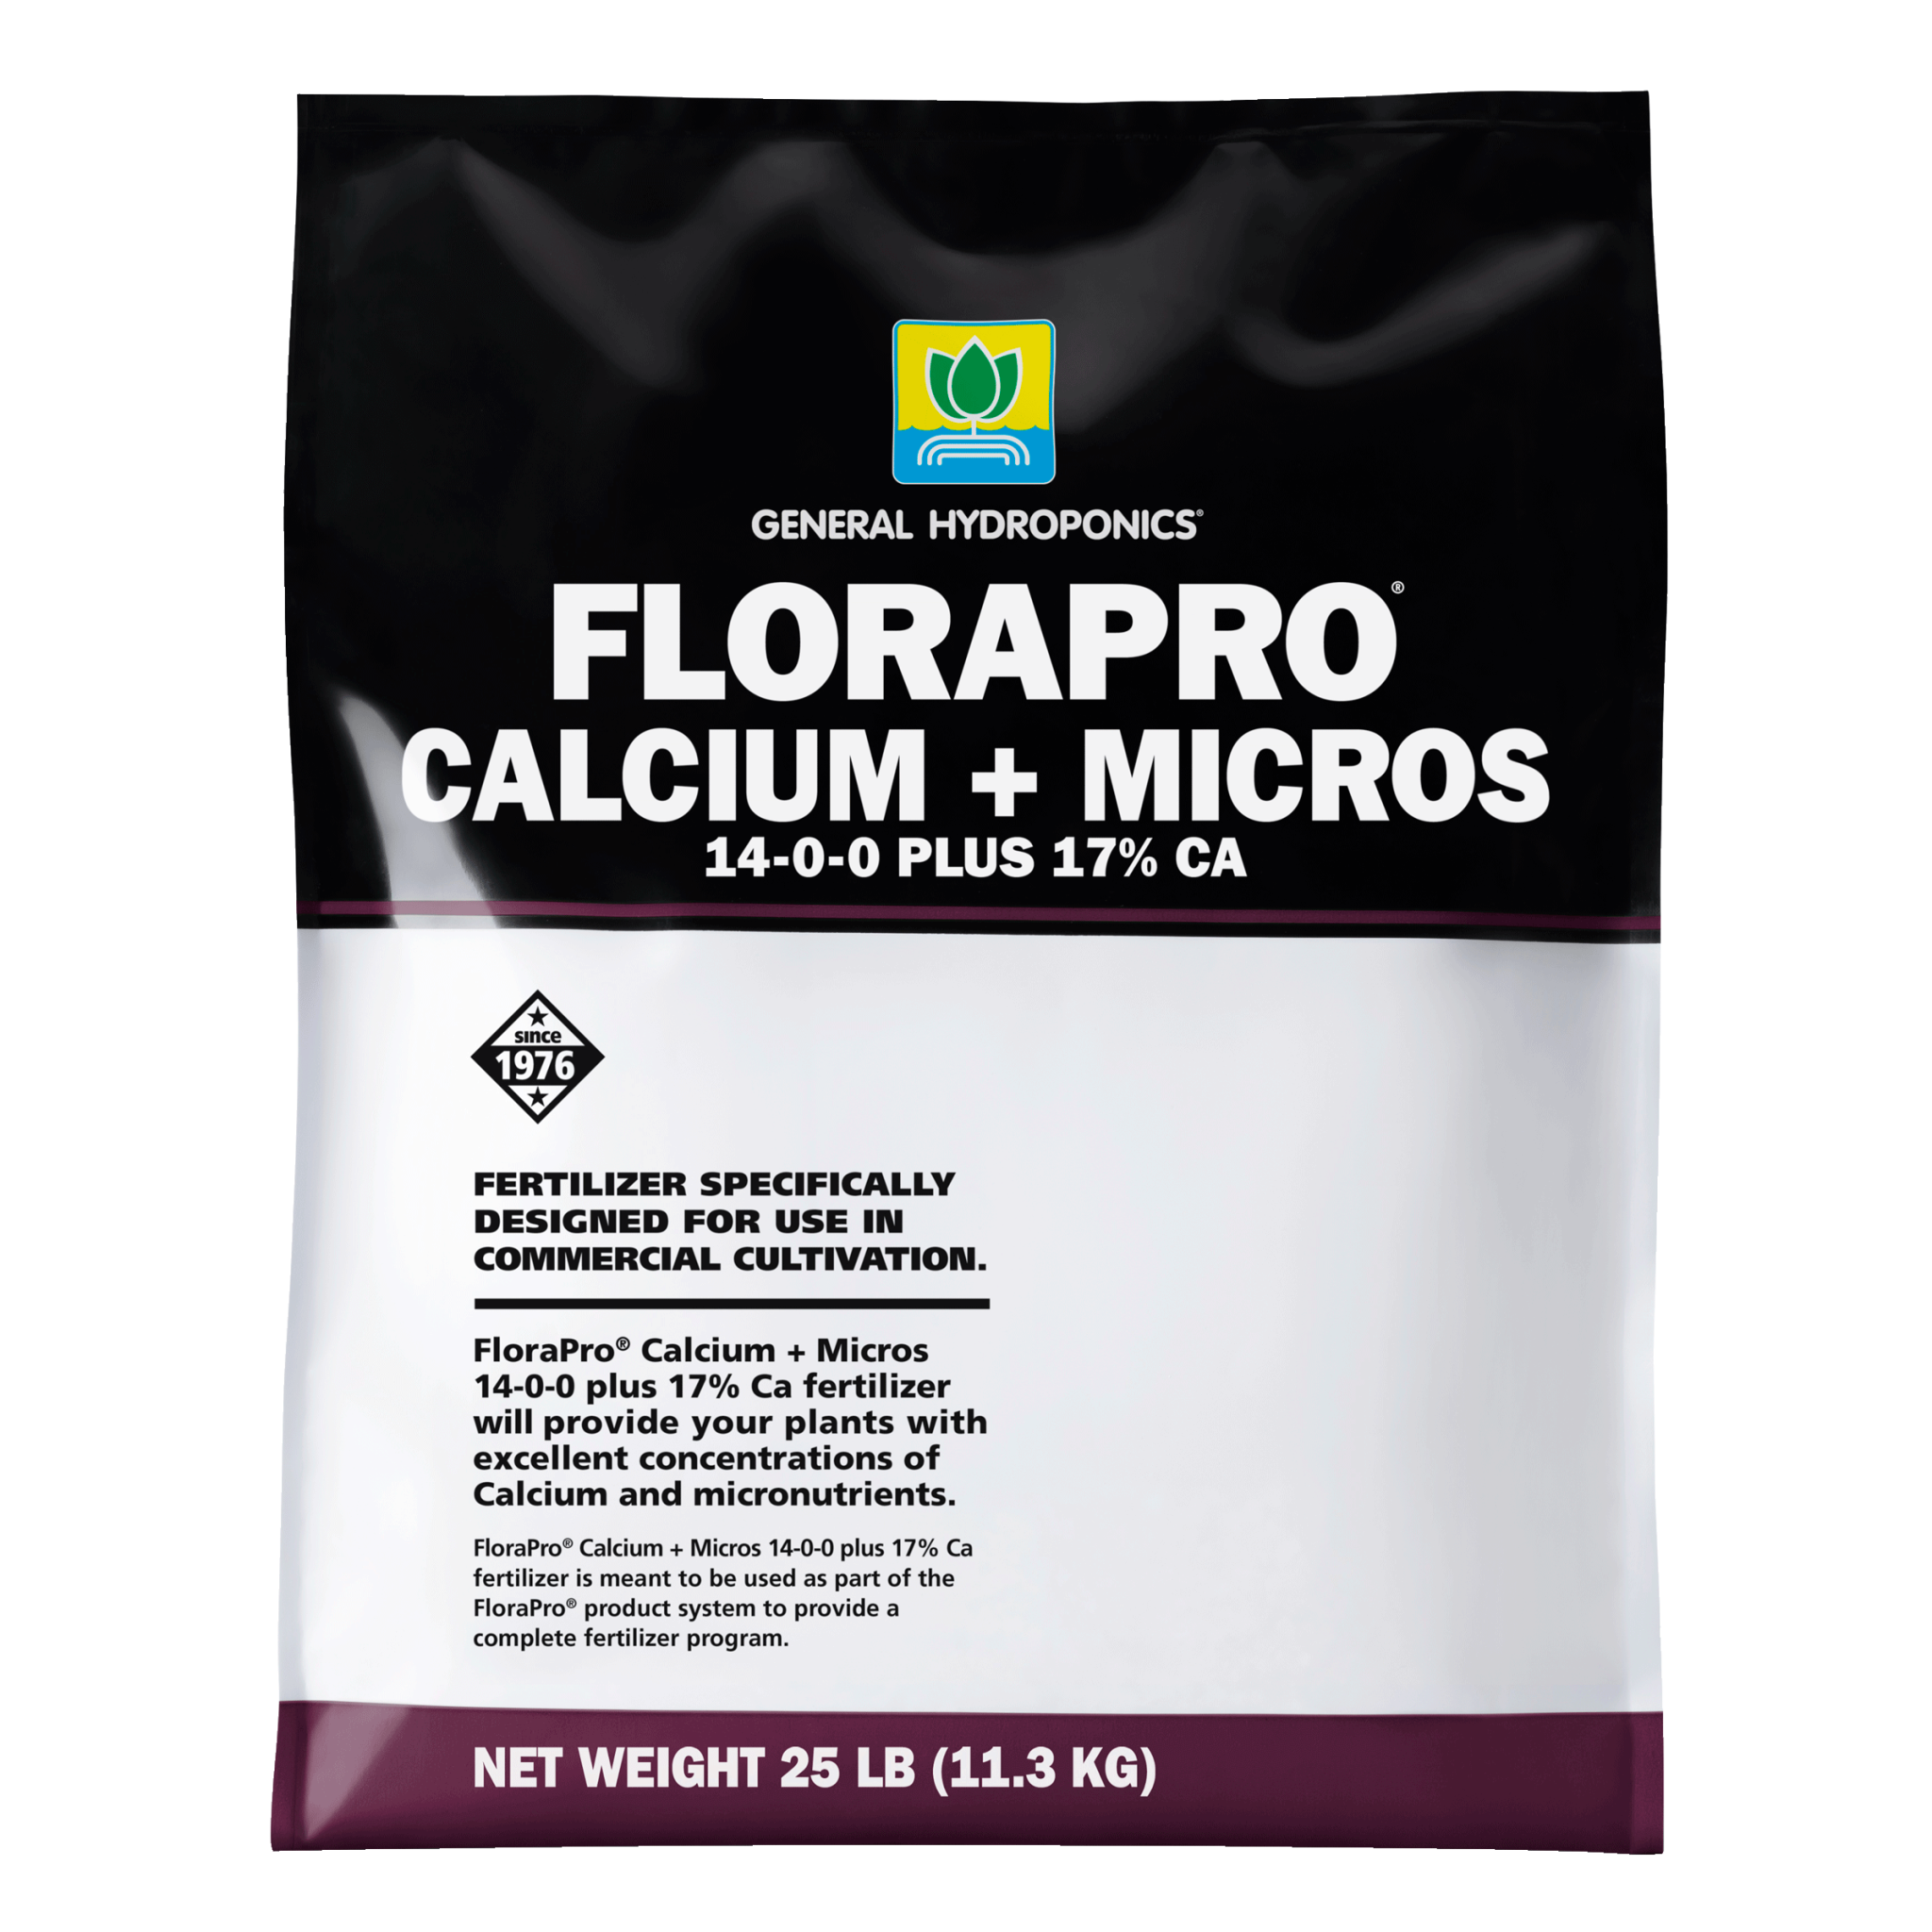 General Hydroponics General Hydroponics - FloraPro Calcium + Micros